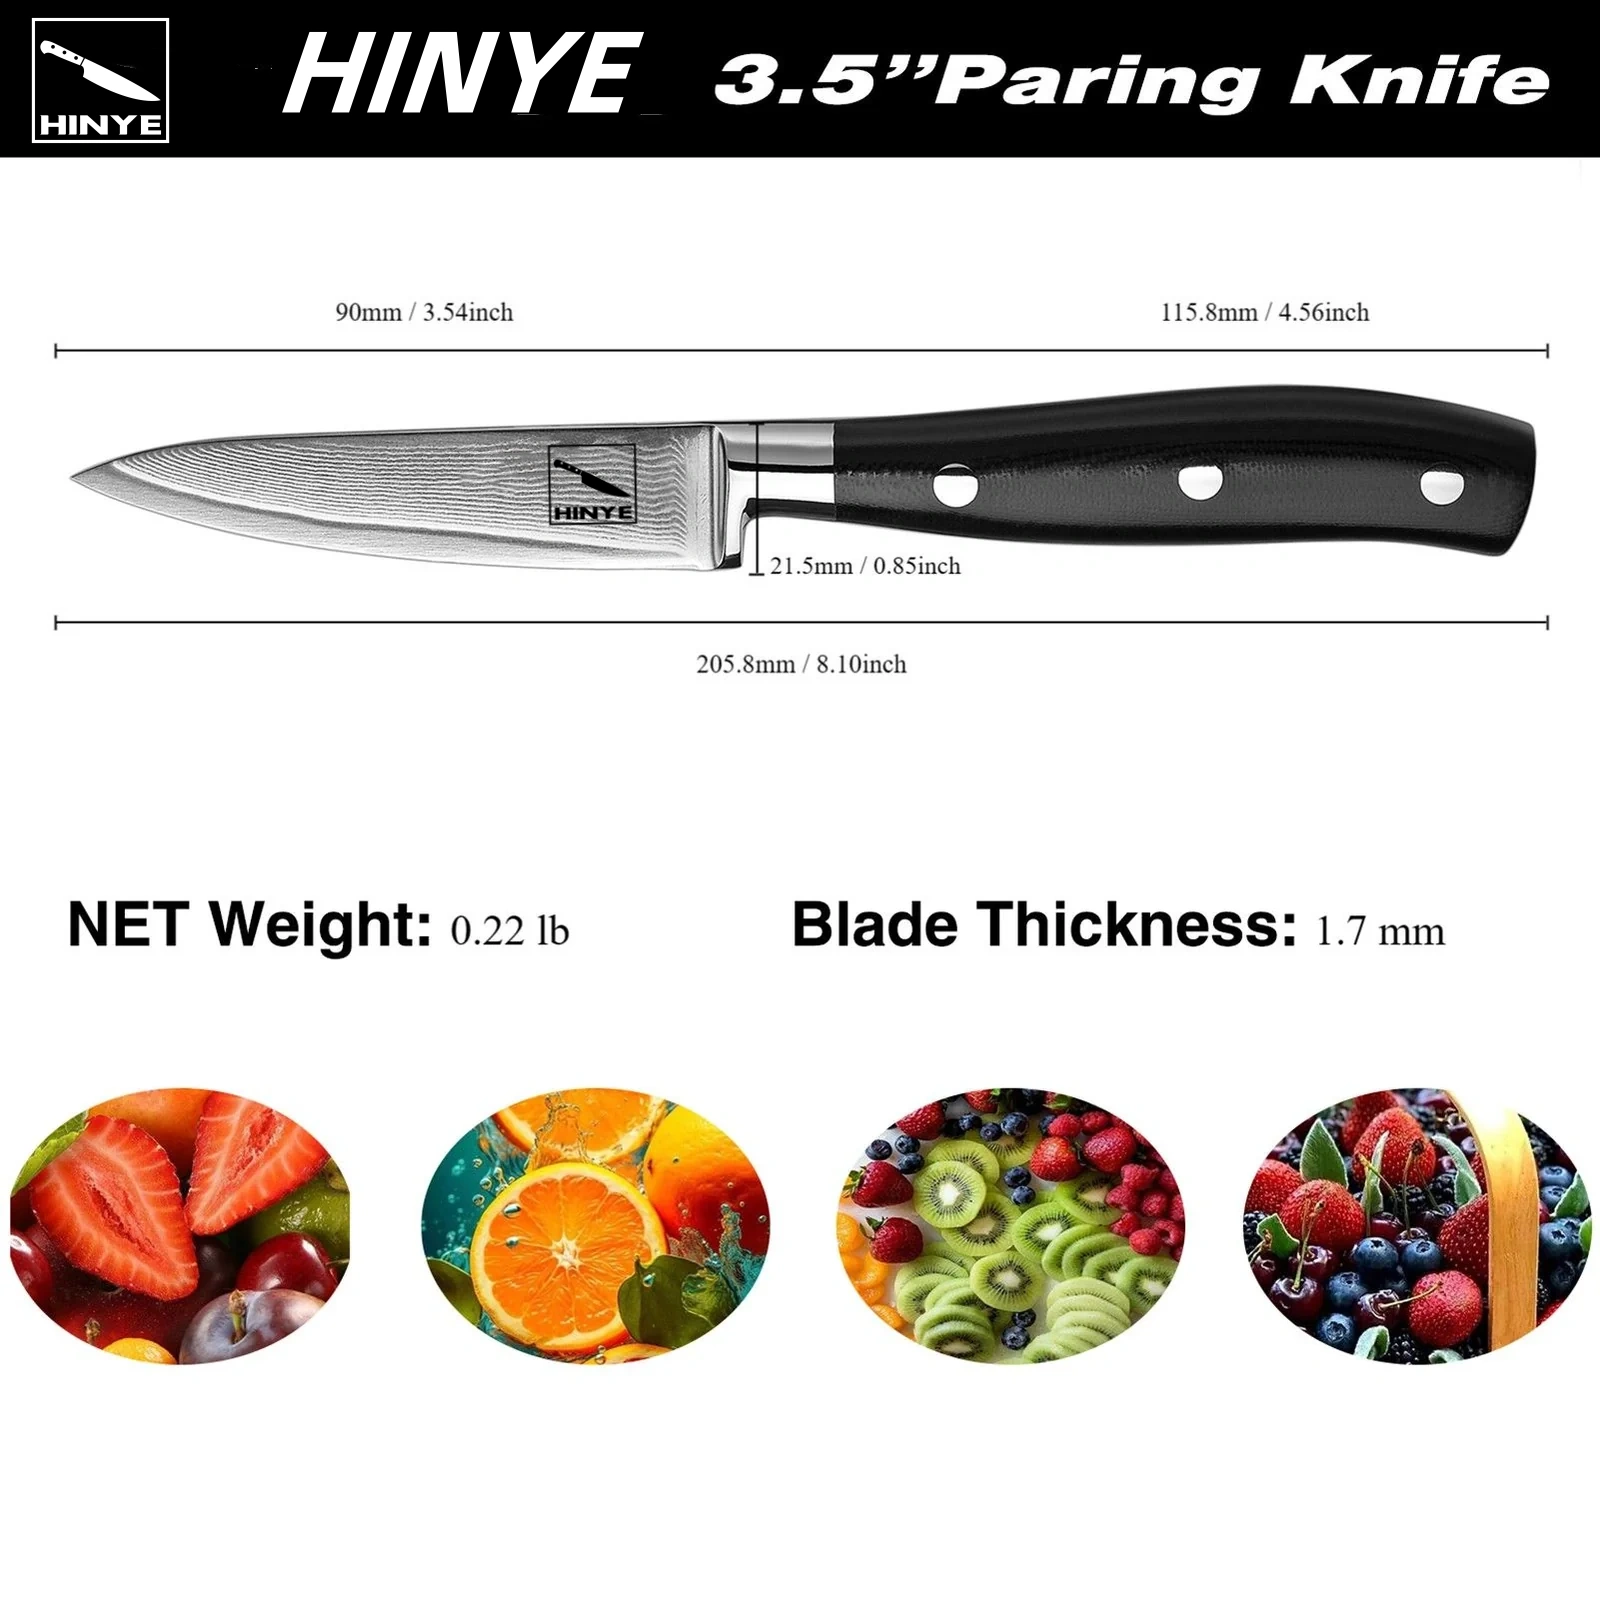 Hinye-Argos 3.5" Paring